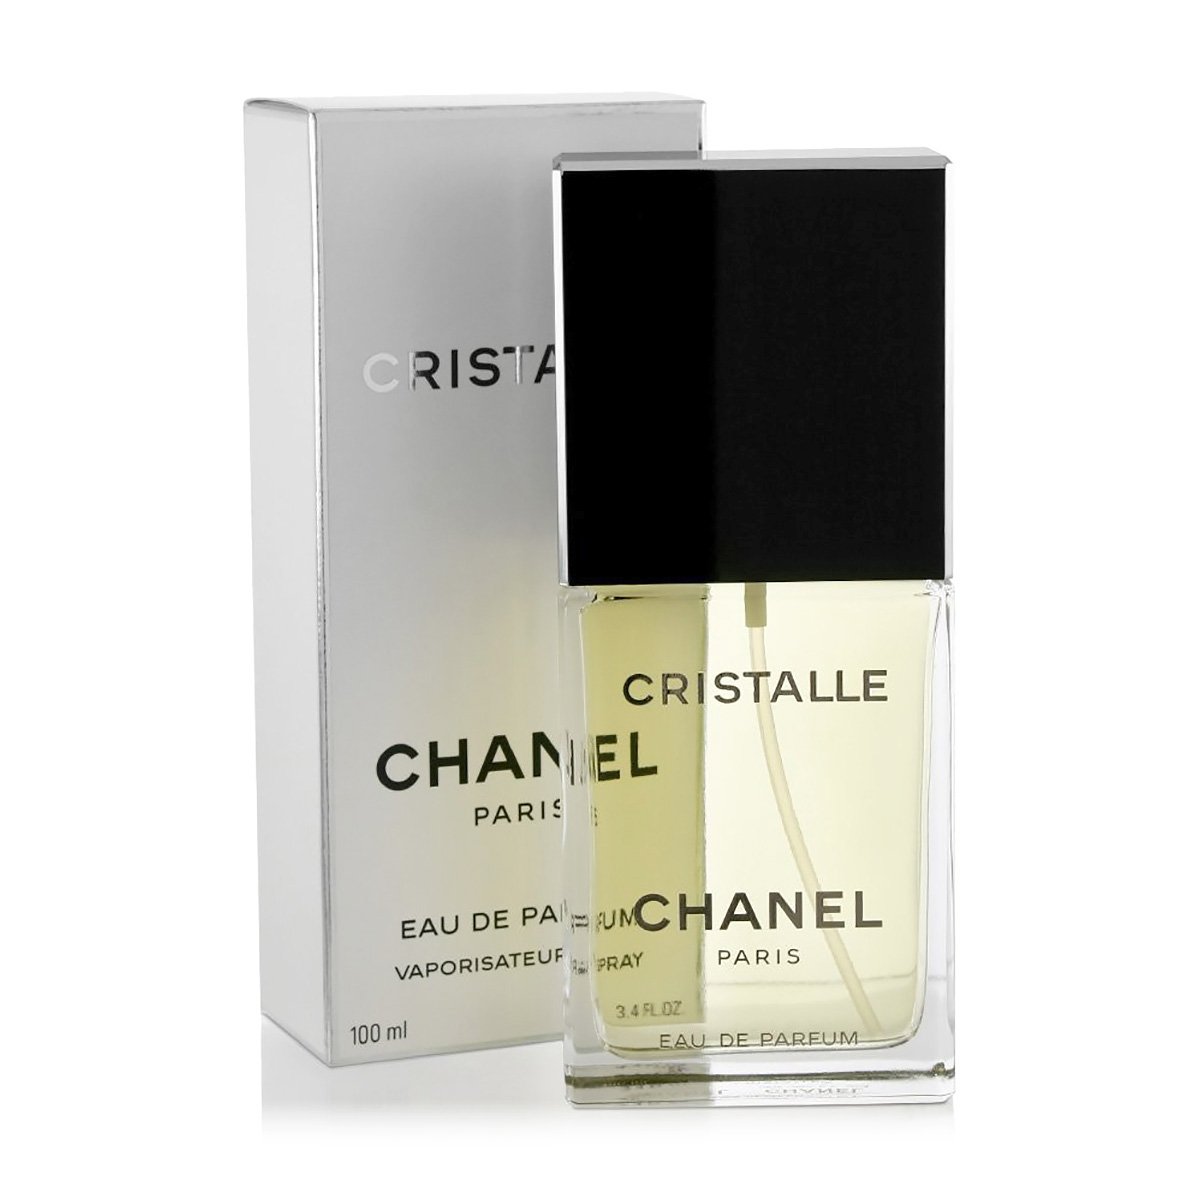 Chanel CRISTALLE EAU DE PARFUM